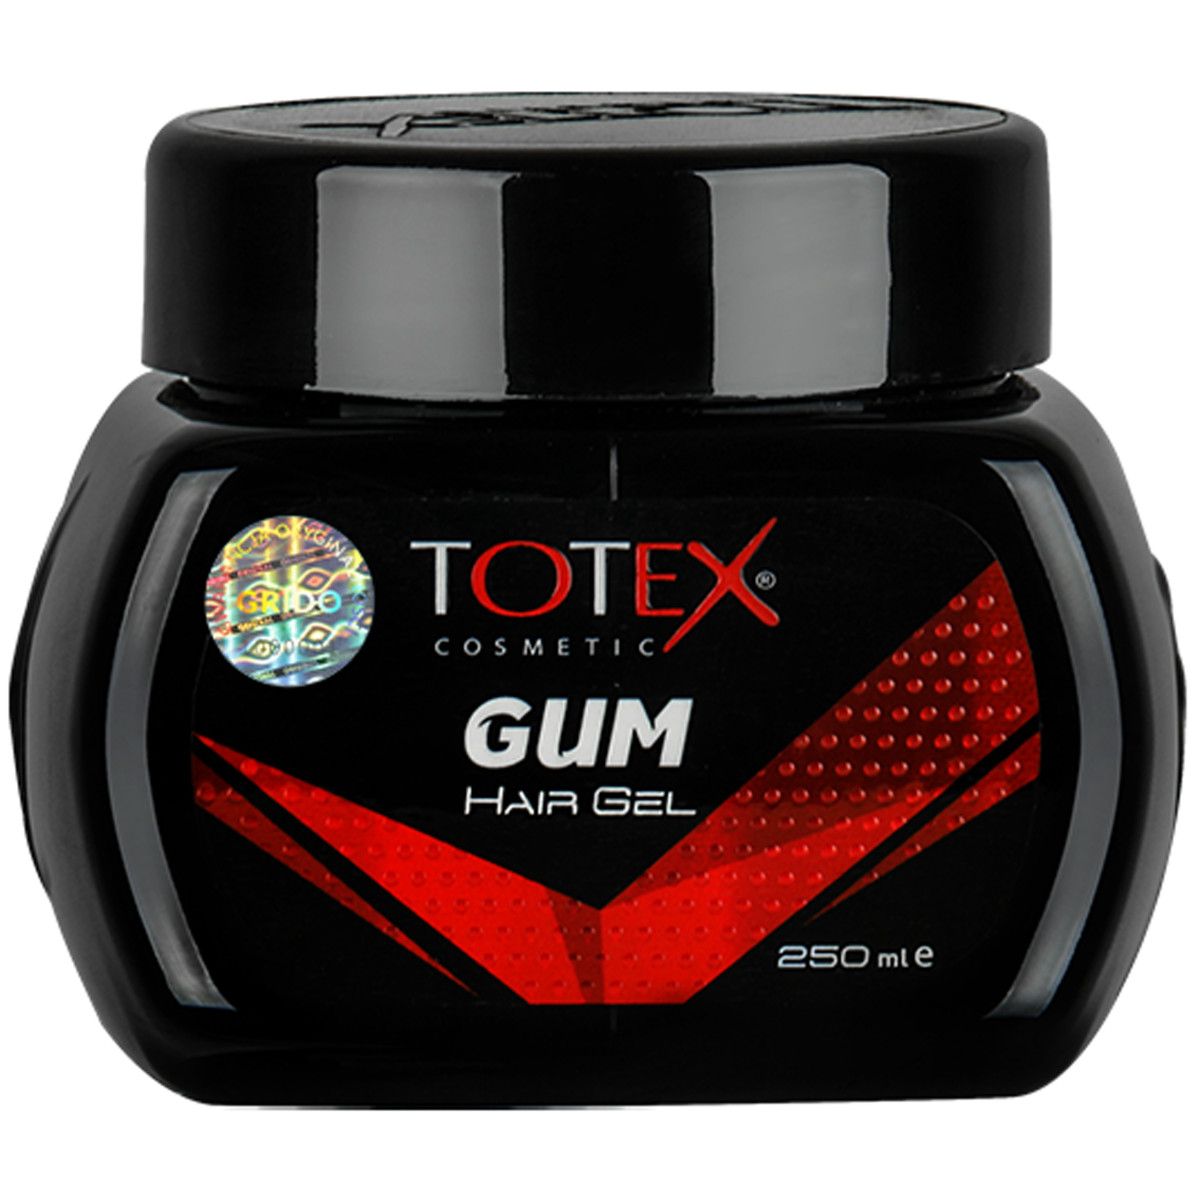 Totex Gum Hair Gel - pogrubiający żel do stylizacji włosów, 250ml